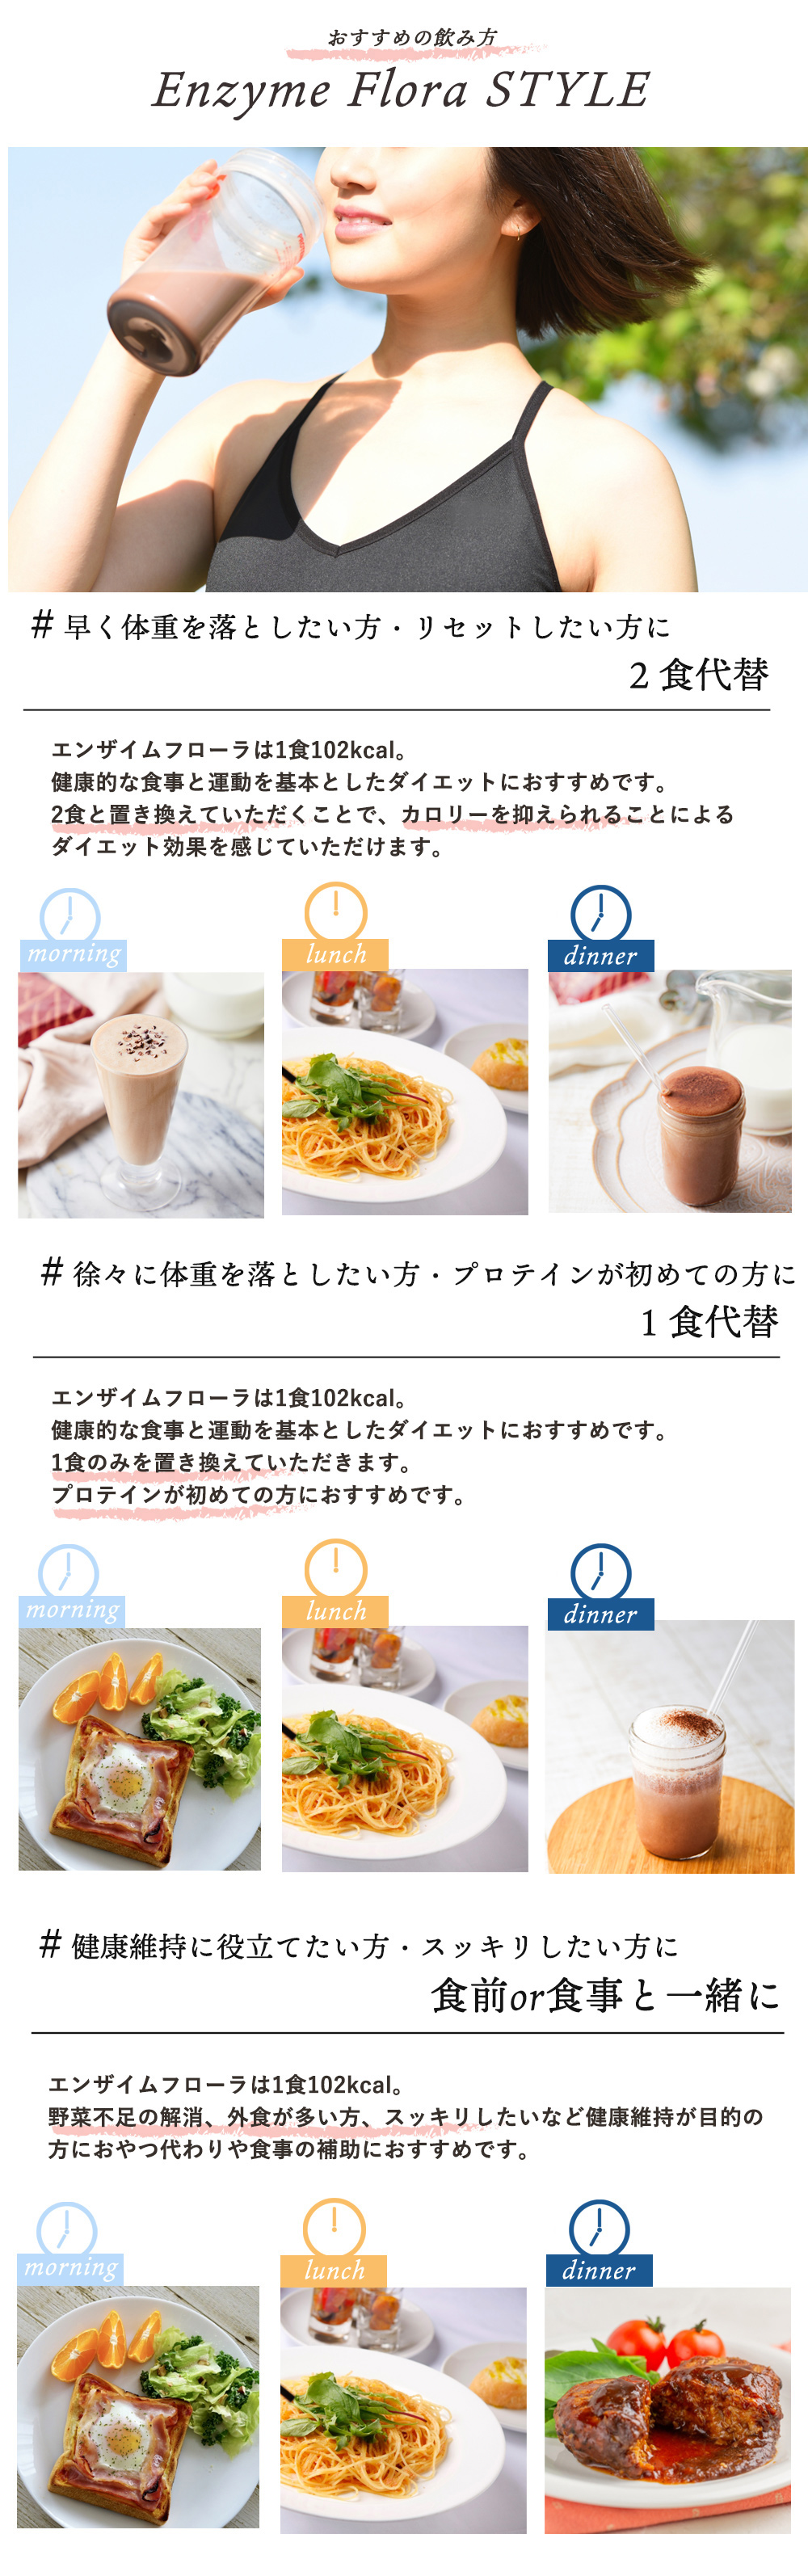 エンザイムフローラプラス restaurantecomeketo.com